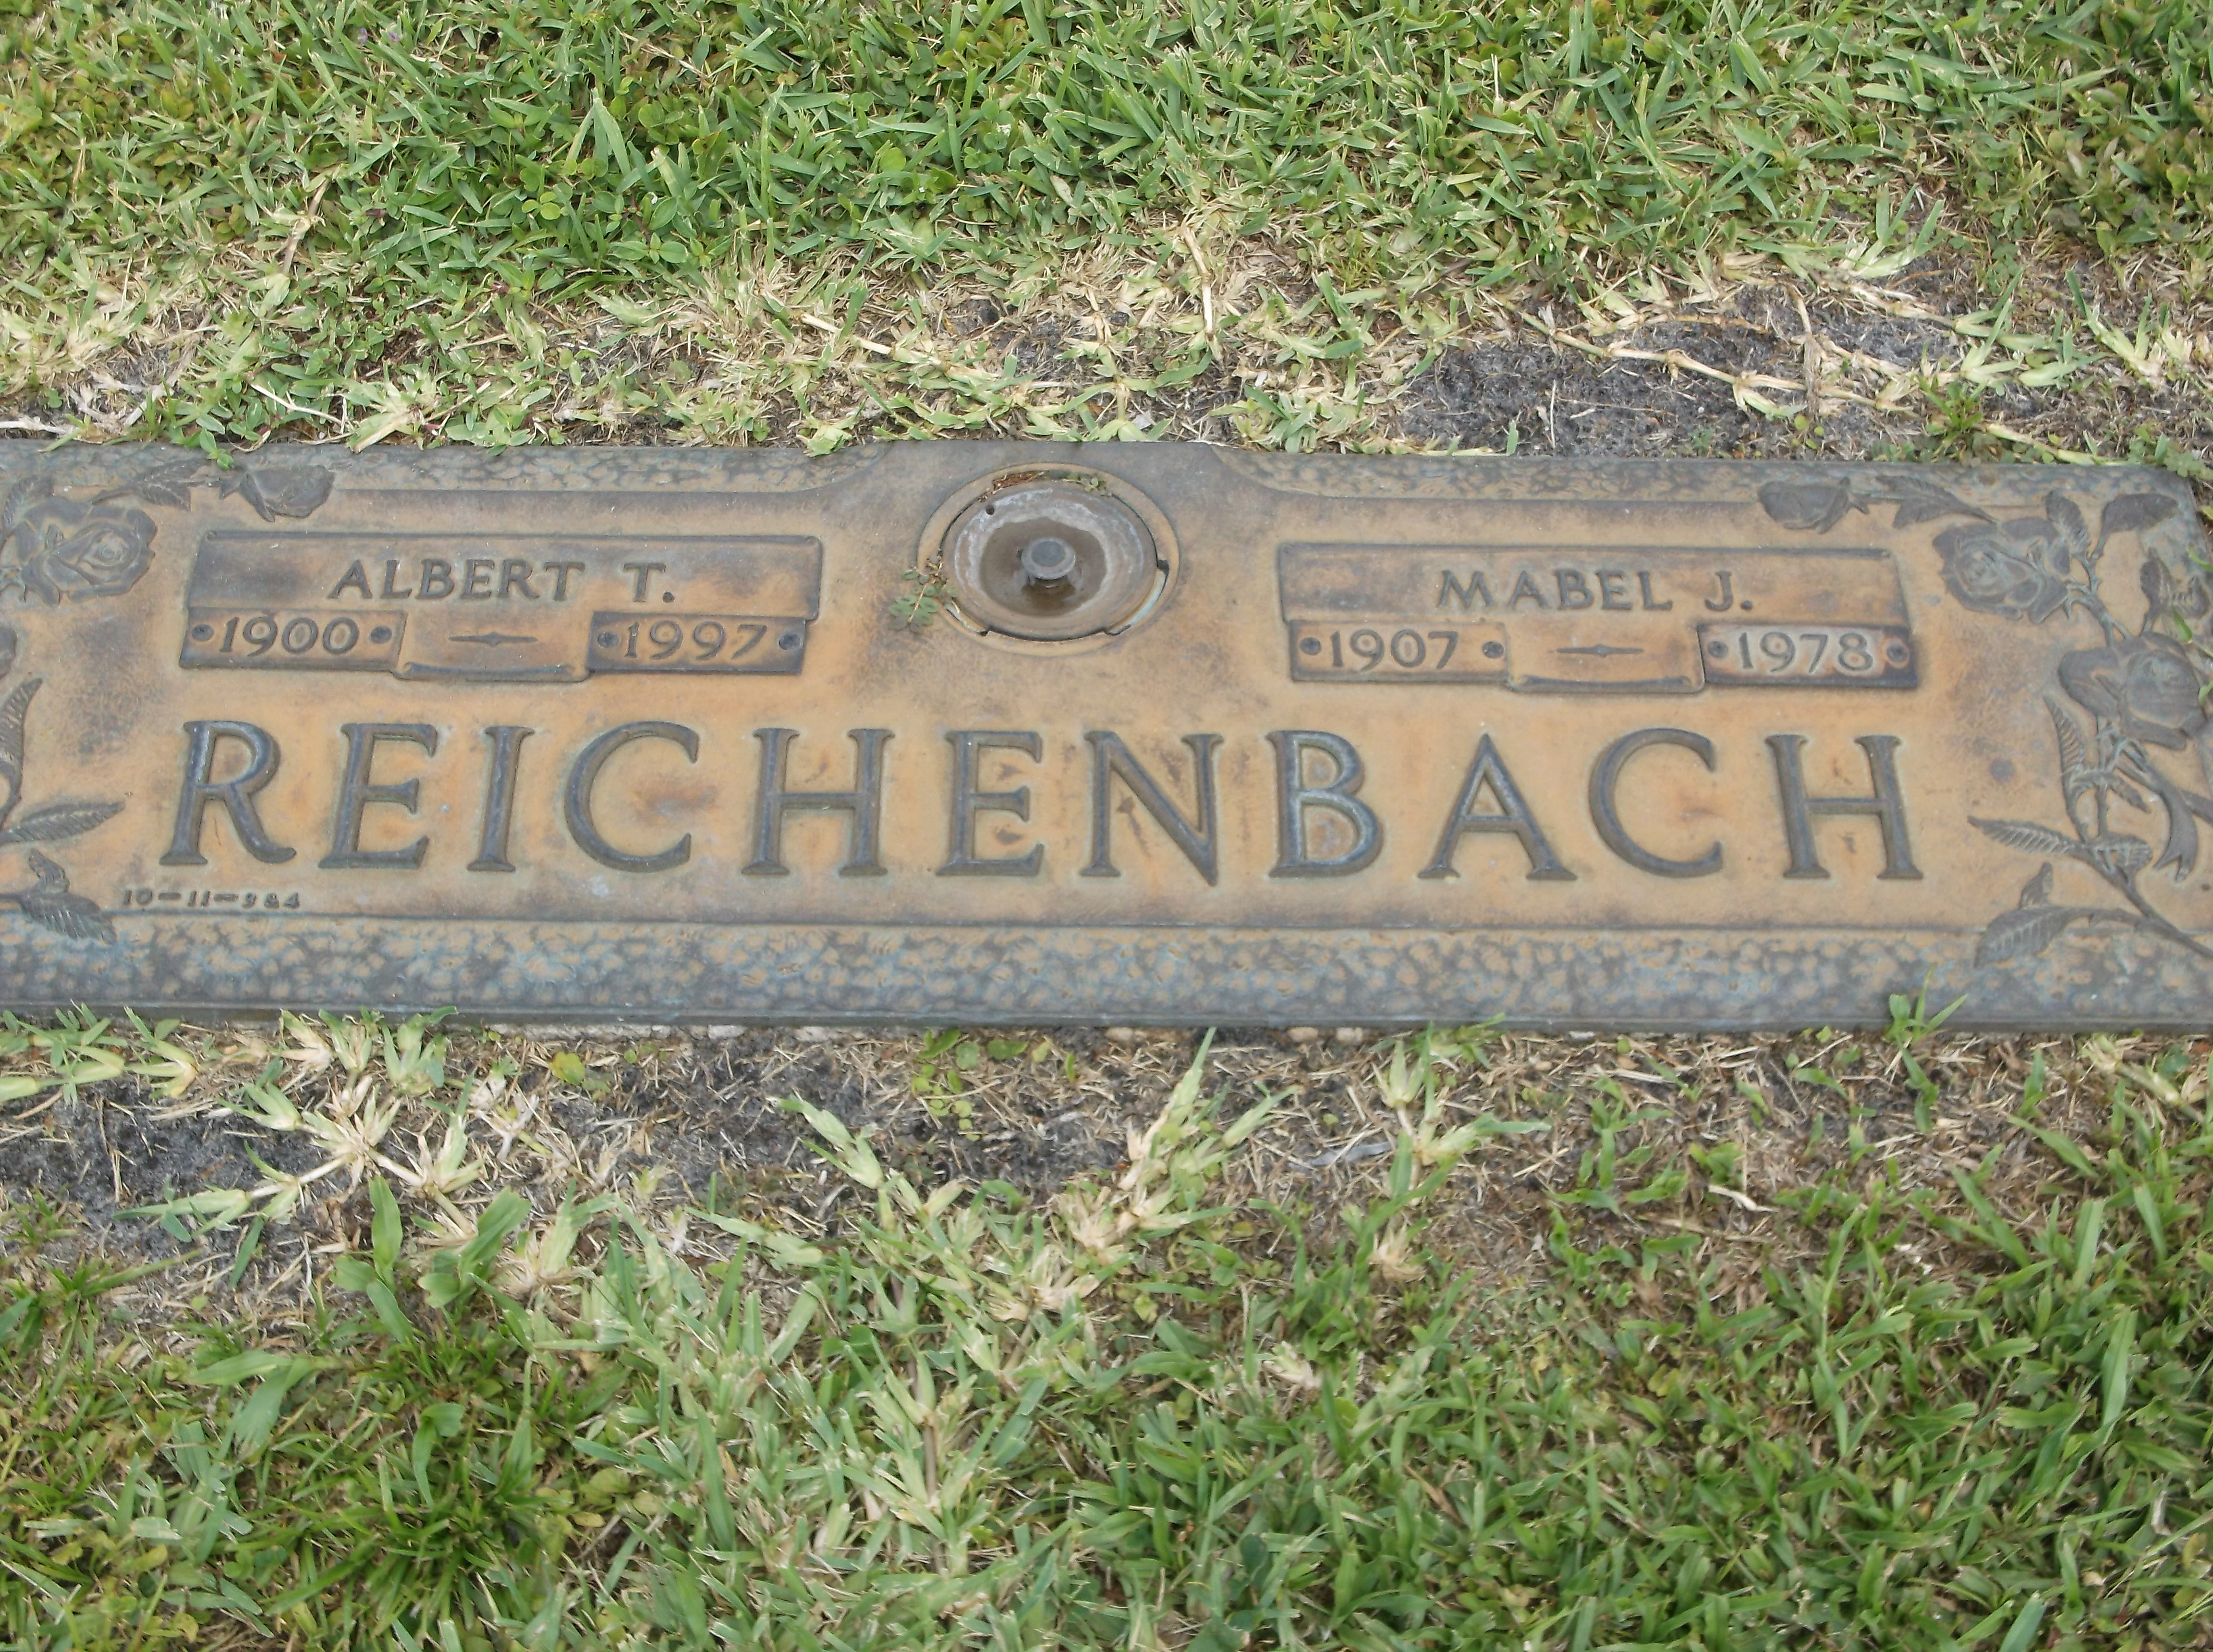 Albert T Reichenbach